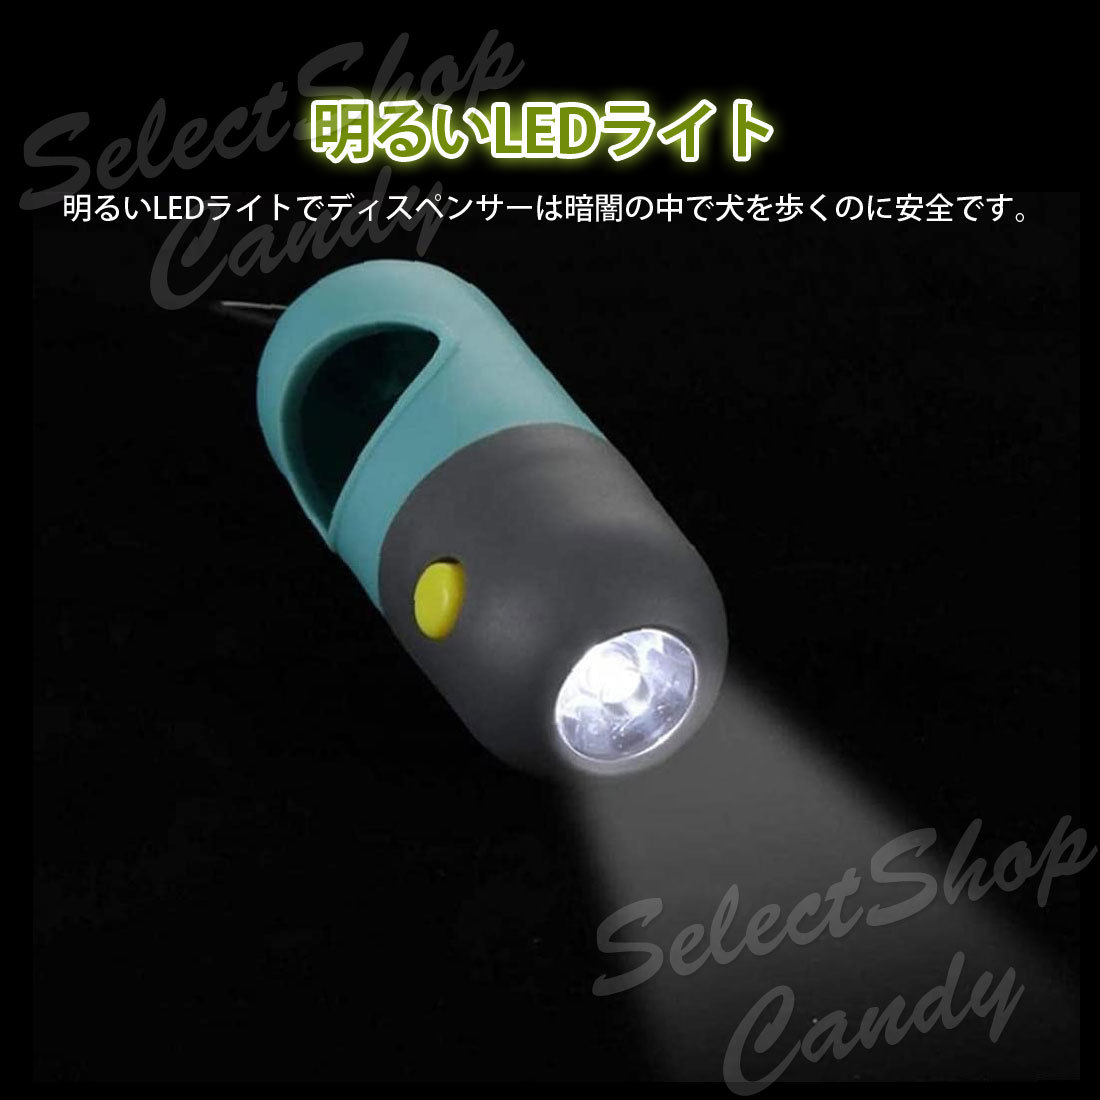 うんち袋 7ロールセット マナー袋 携帯 LEDライト ケース エチケット袋_画像3